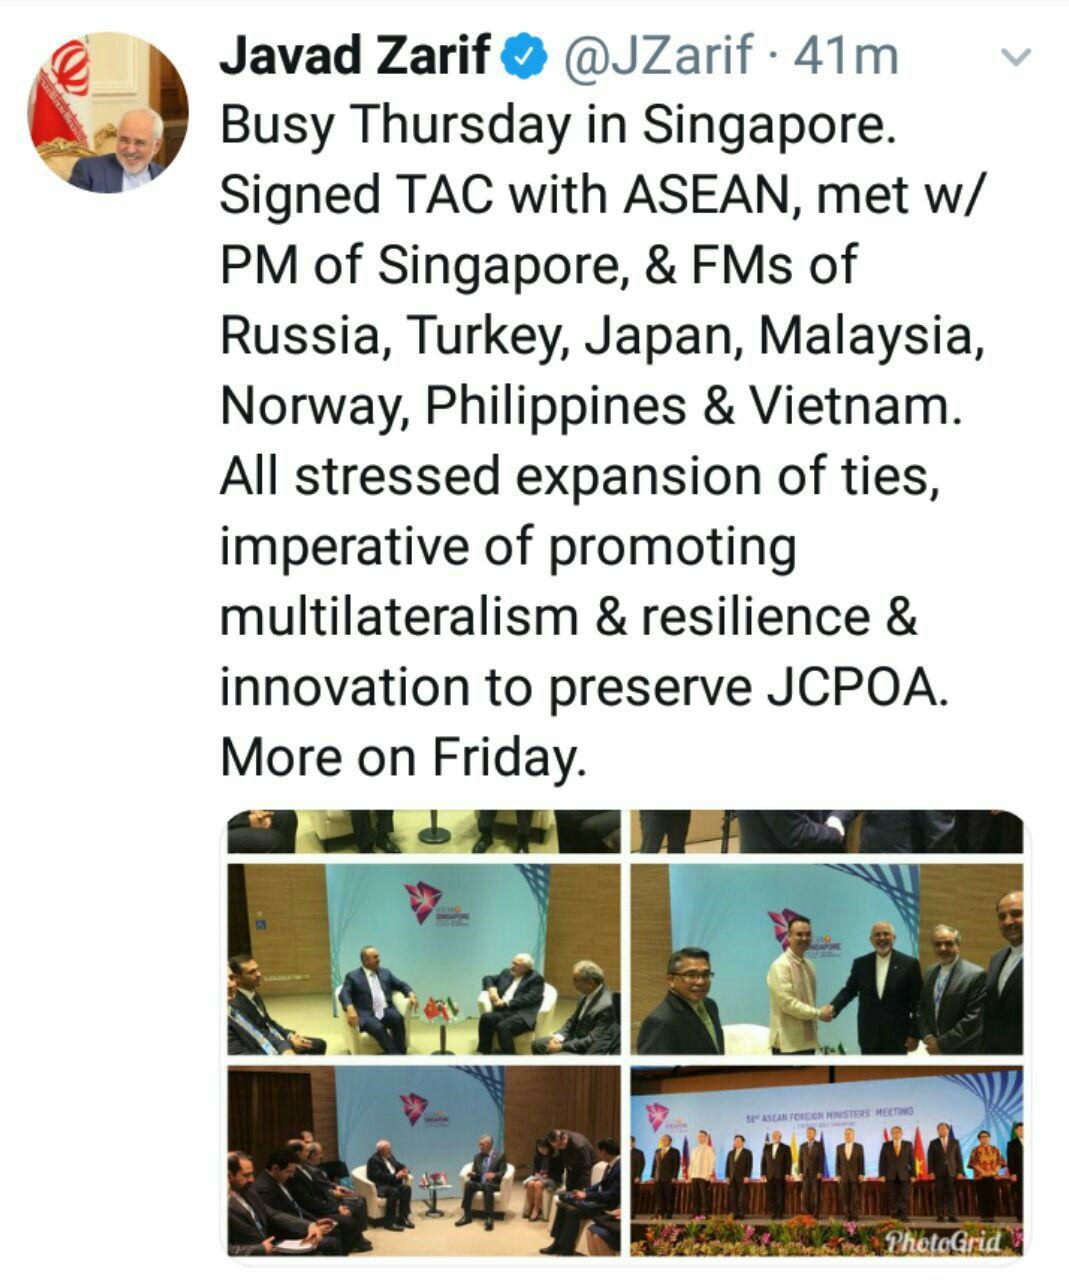 توئیتی را از پنجشنبه پرکار در سنگاپور و دیدار های مفید دوجانبه با همتایان و مقامات خارجی